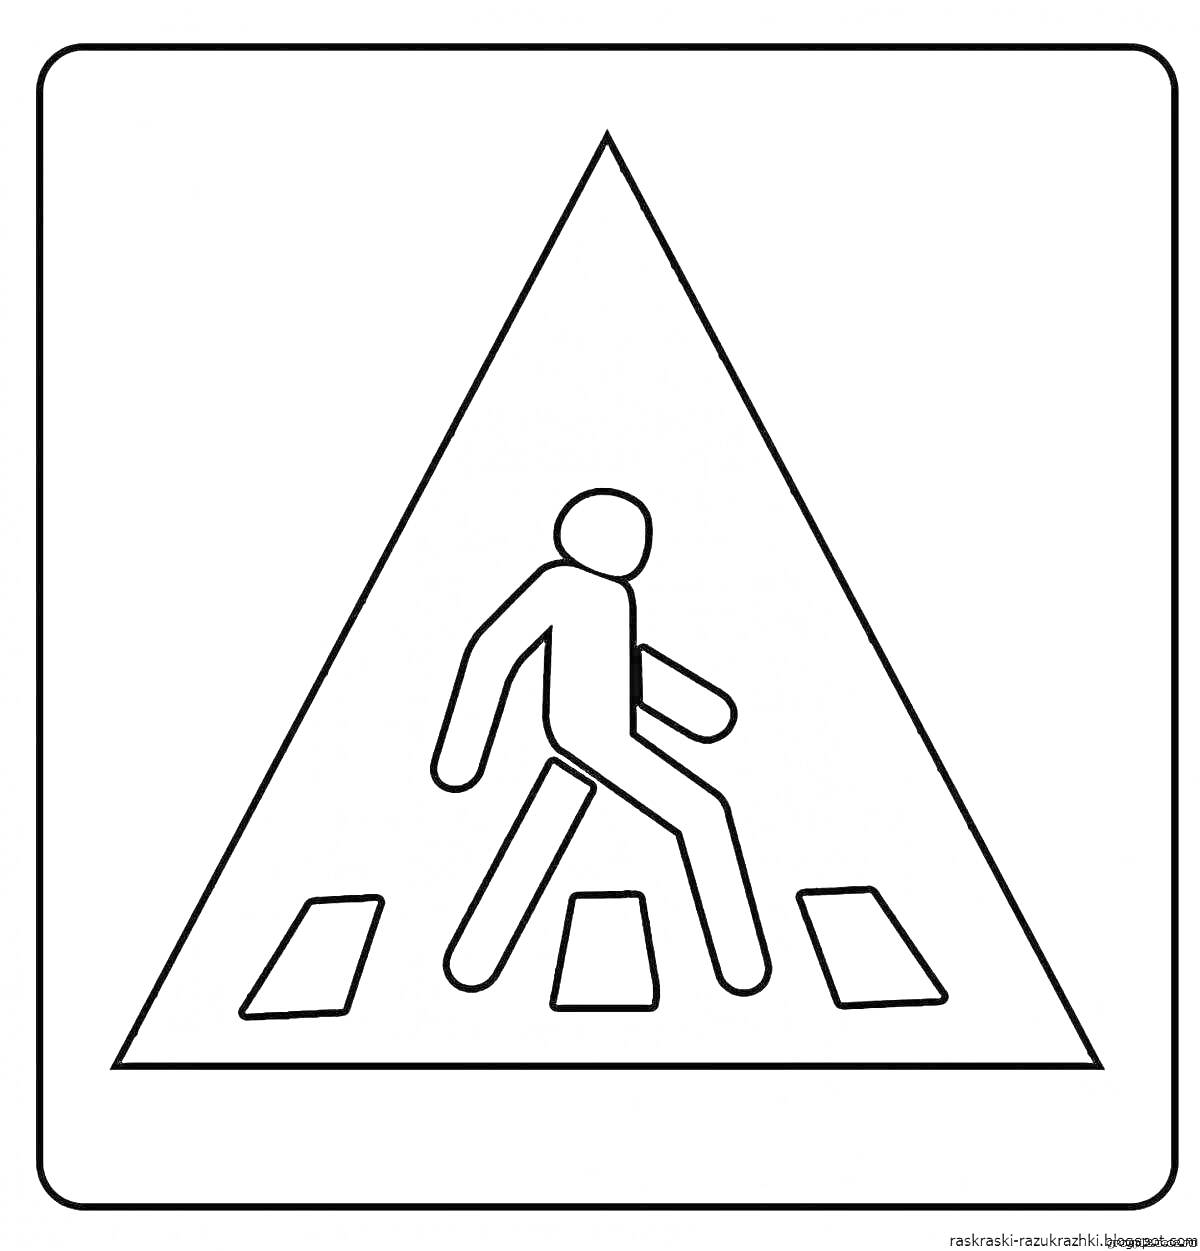 Раскраска Знак пешеходного перехода, человек и зебра в треугольнике, квадратная рамка